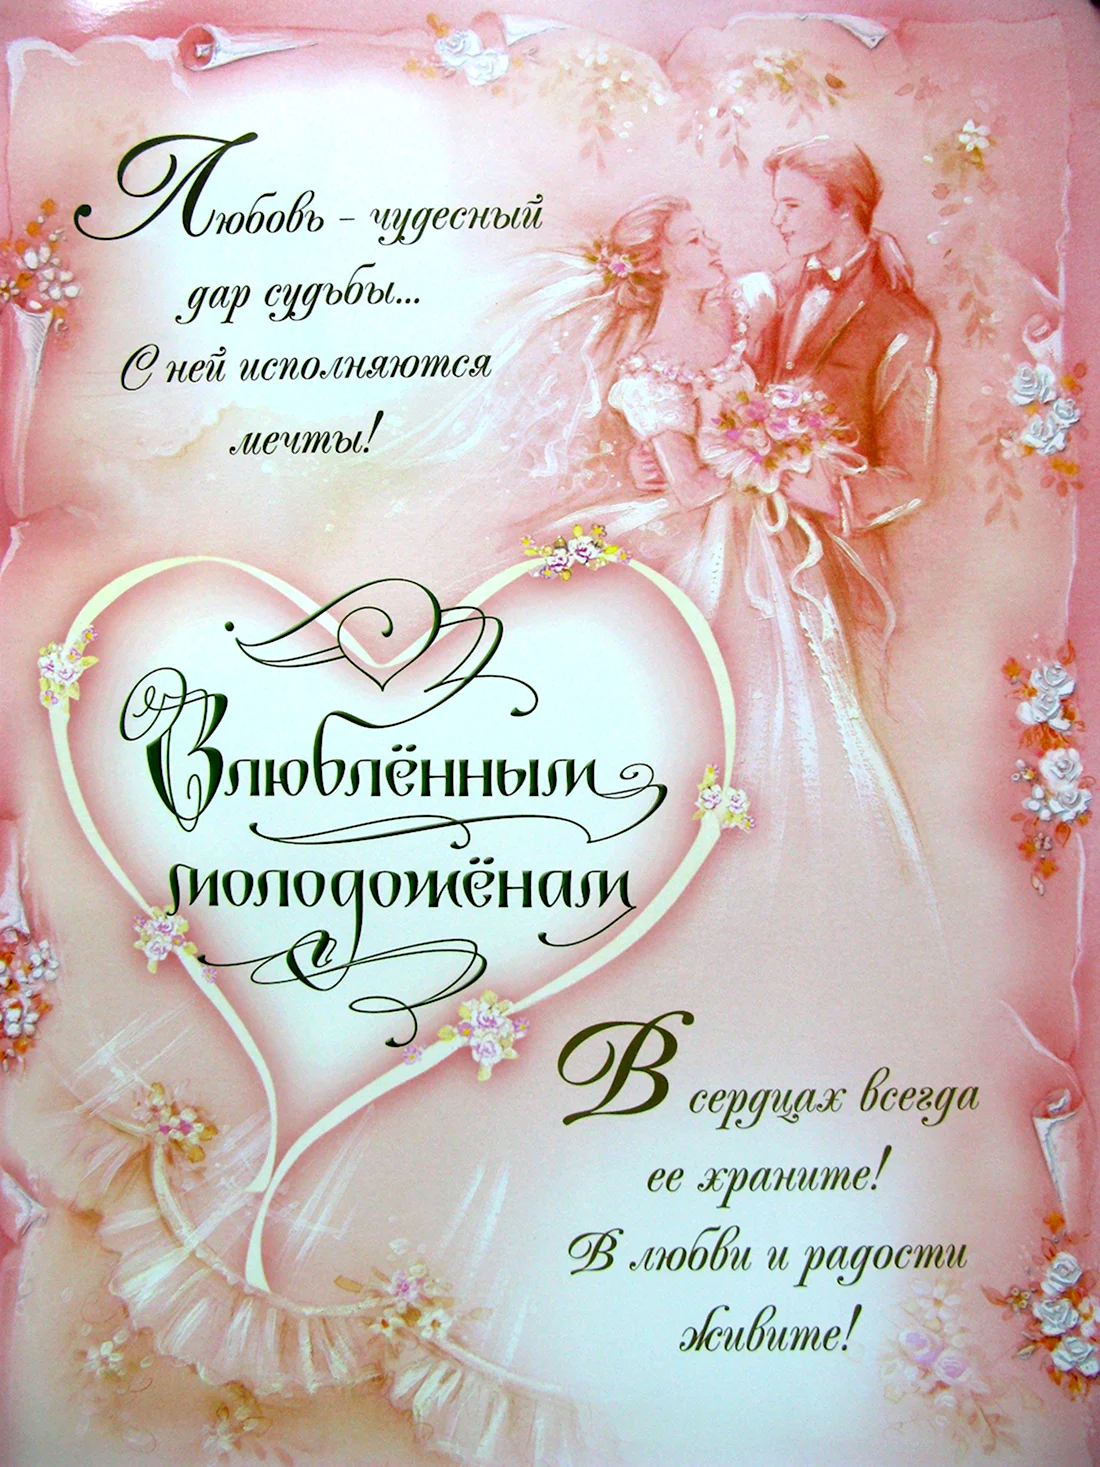 Поздравление со свадьбой открытка